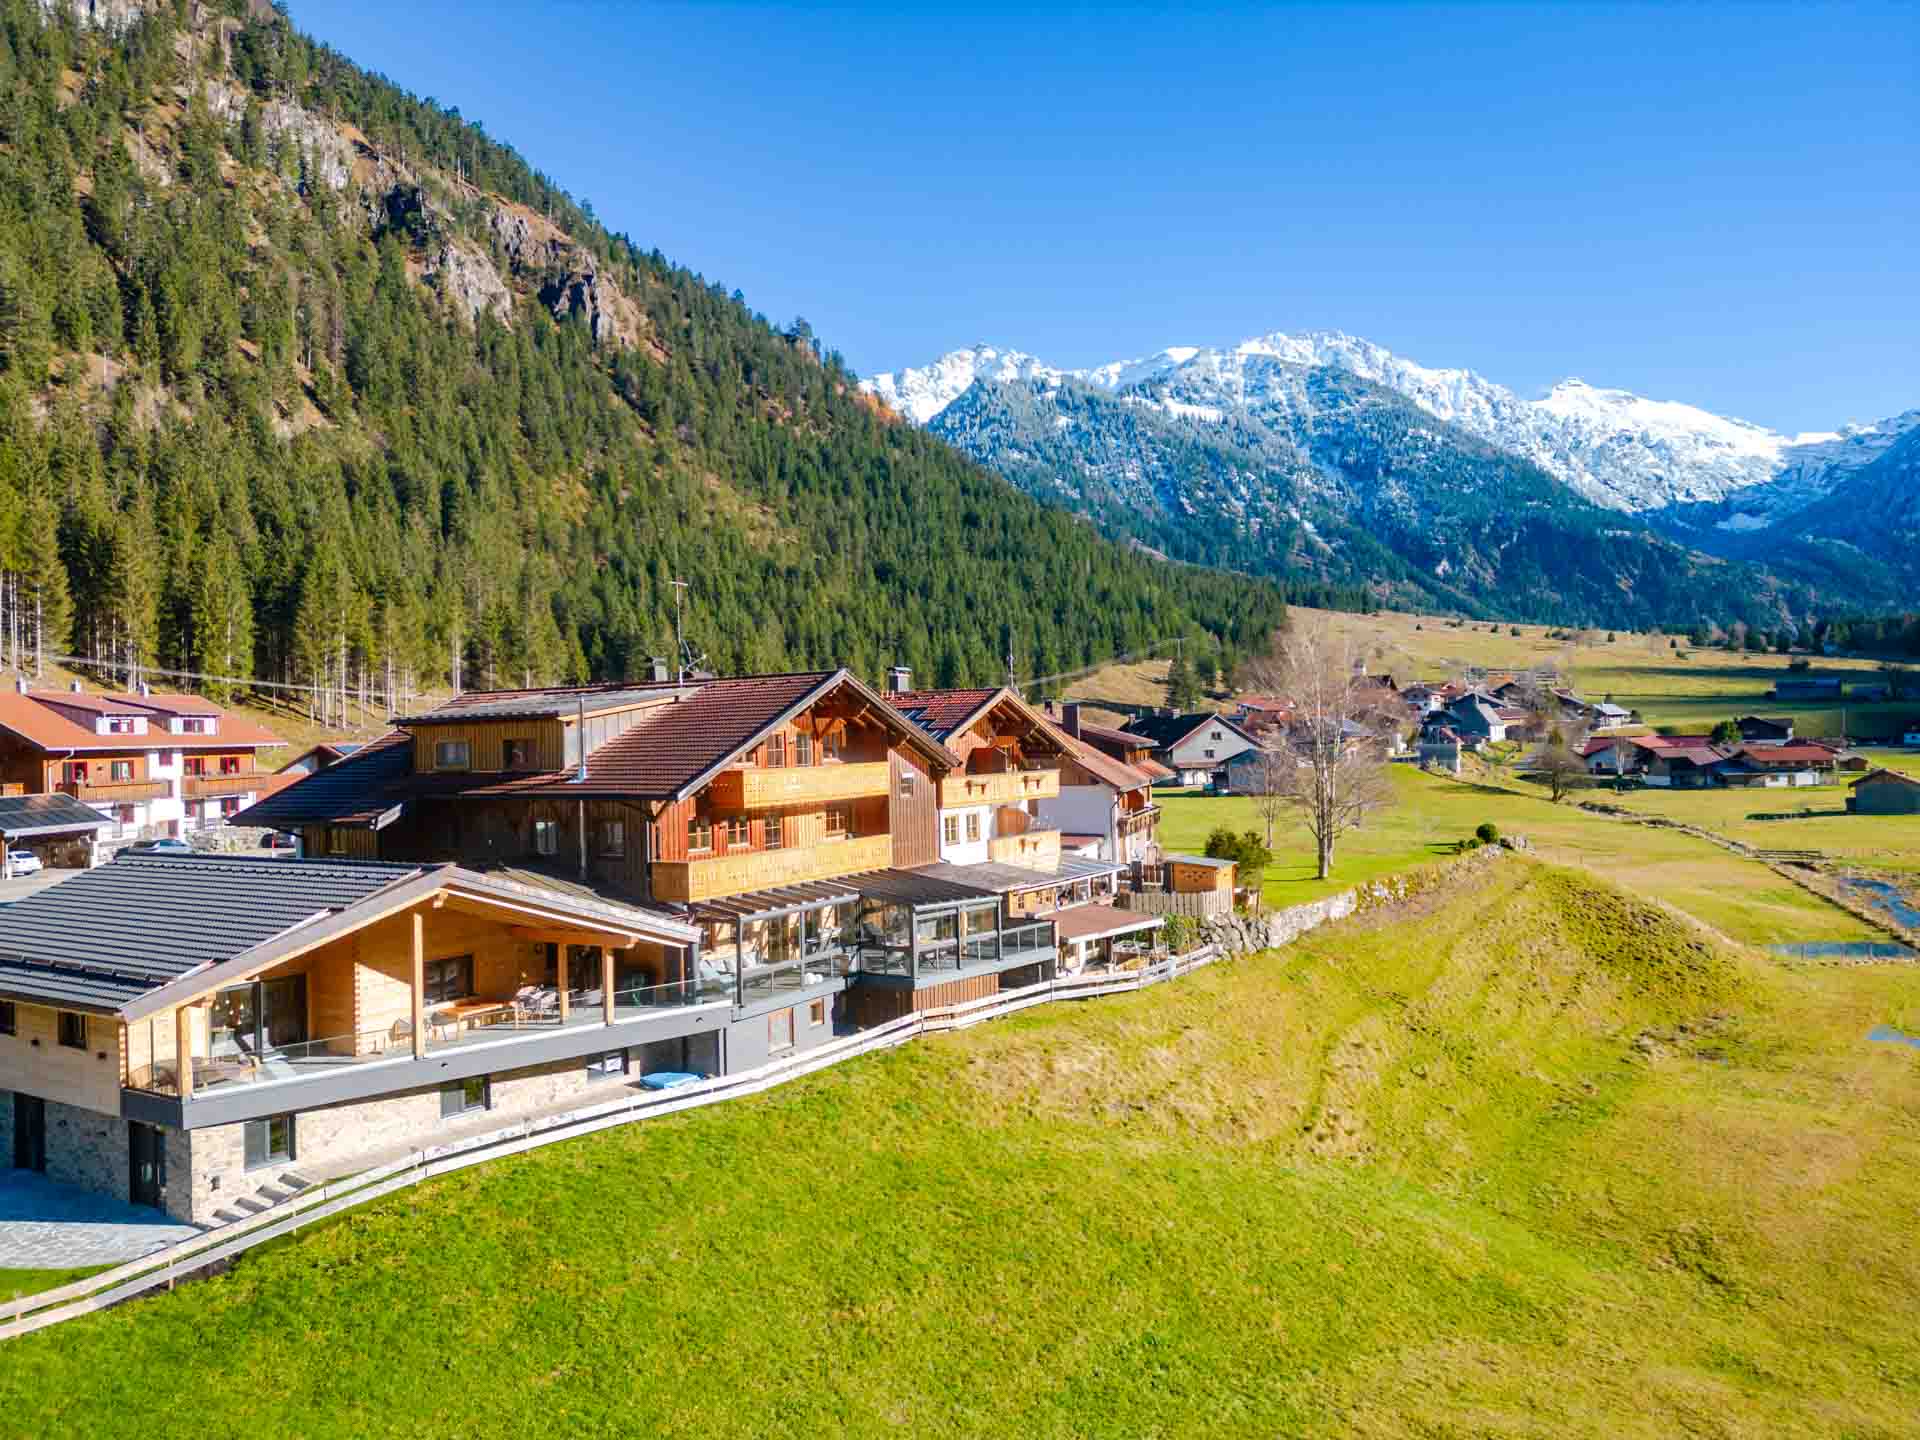 Blauer Himmel, Alpen, Berge, Allgäu, Ferienwohnung, Haus aus Holz